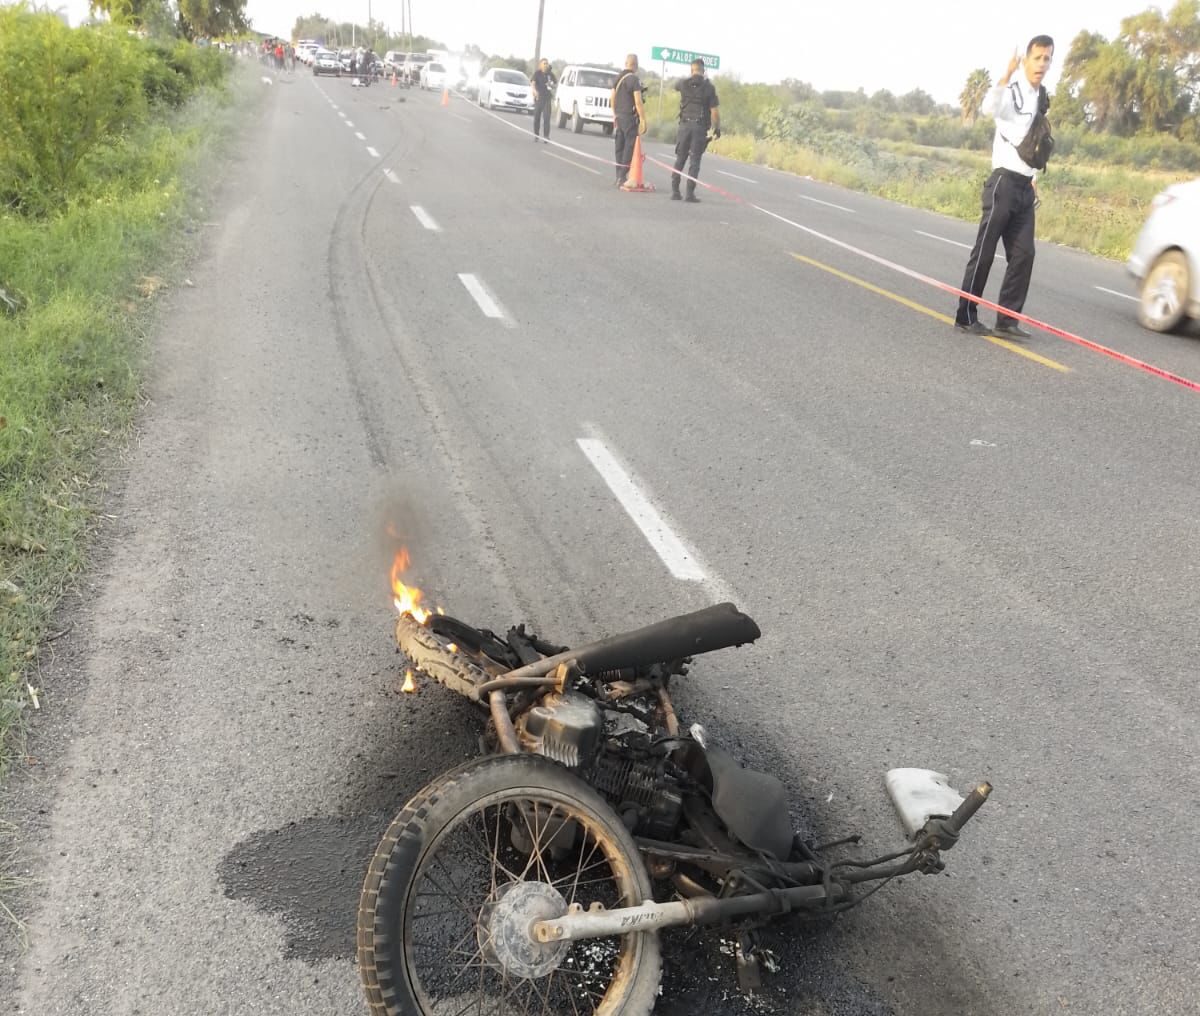 Don Eleazar en su moto encontró la muerte, chocado por vagoneta en la carretera a Las Glorias, Guasave